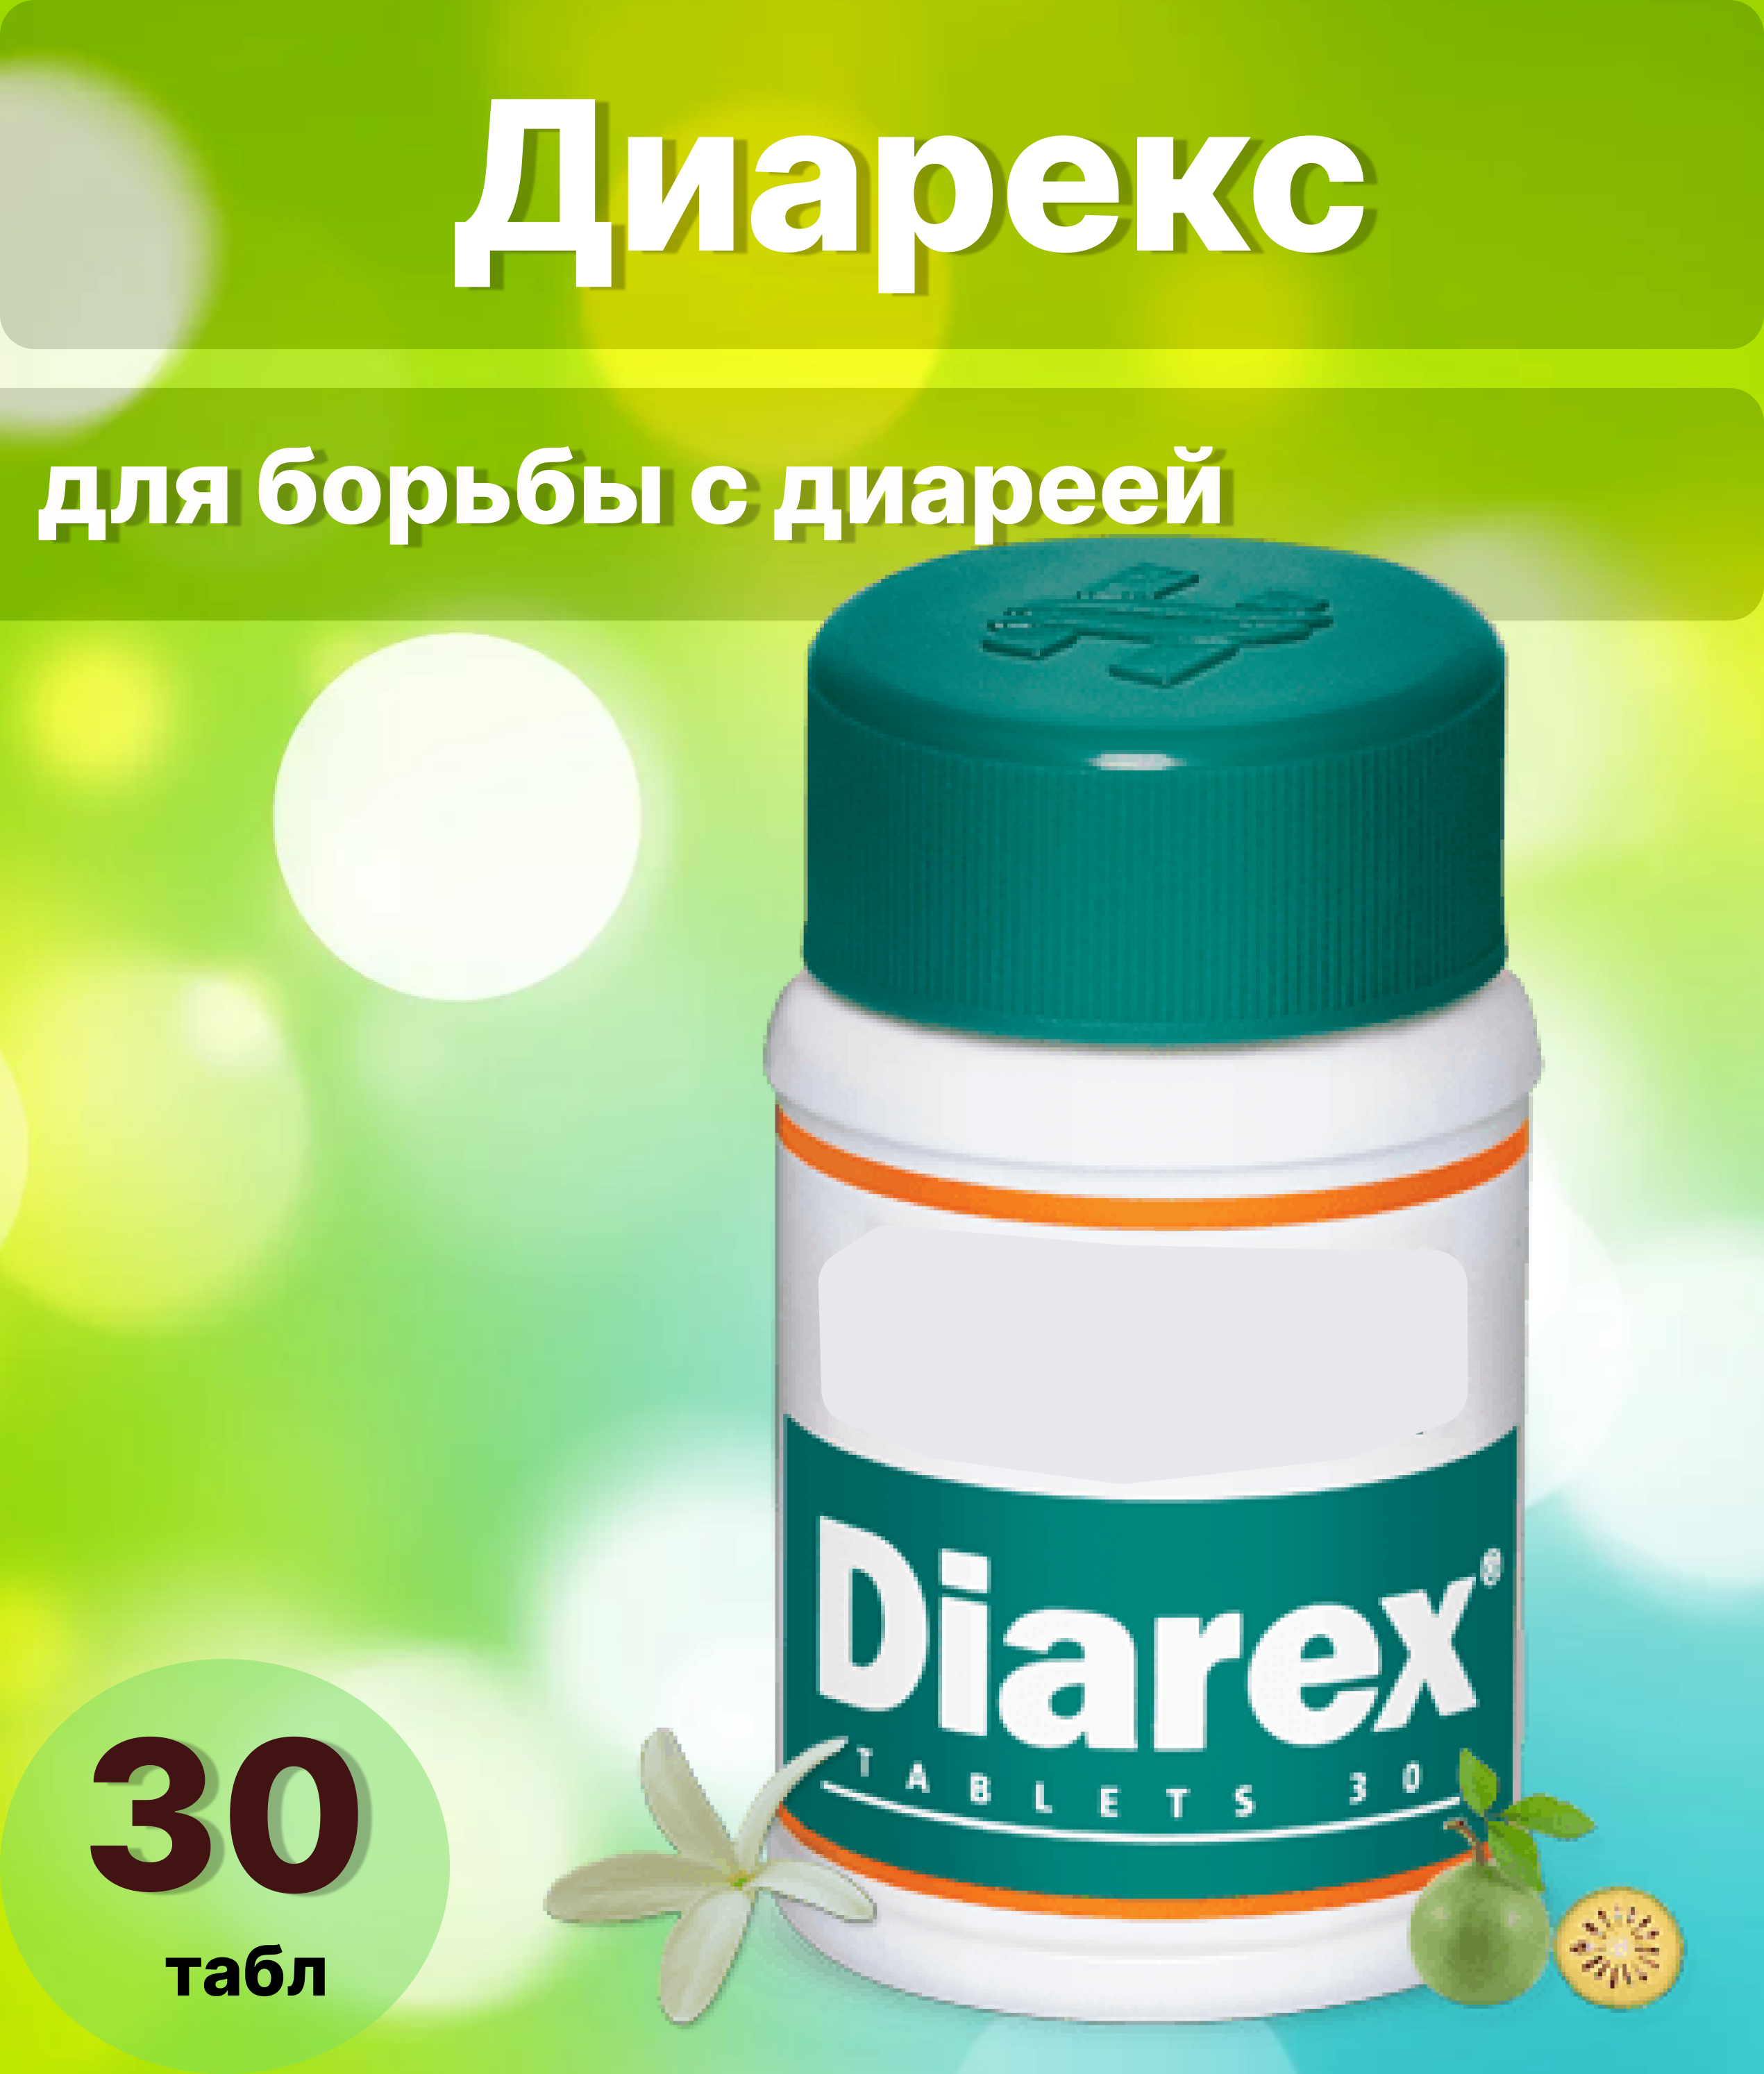 Диарекс - аюрведическое средство для борьбы с диареей